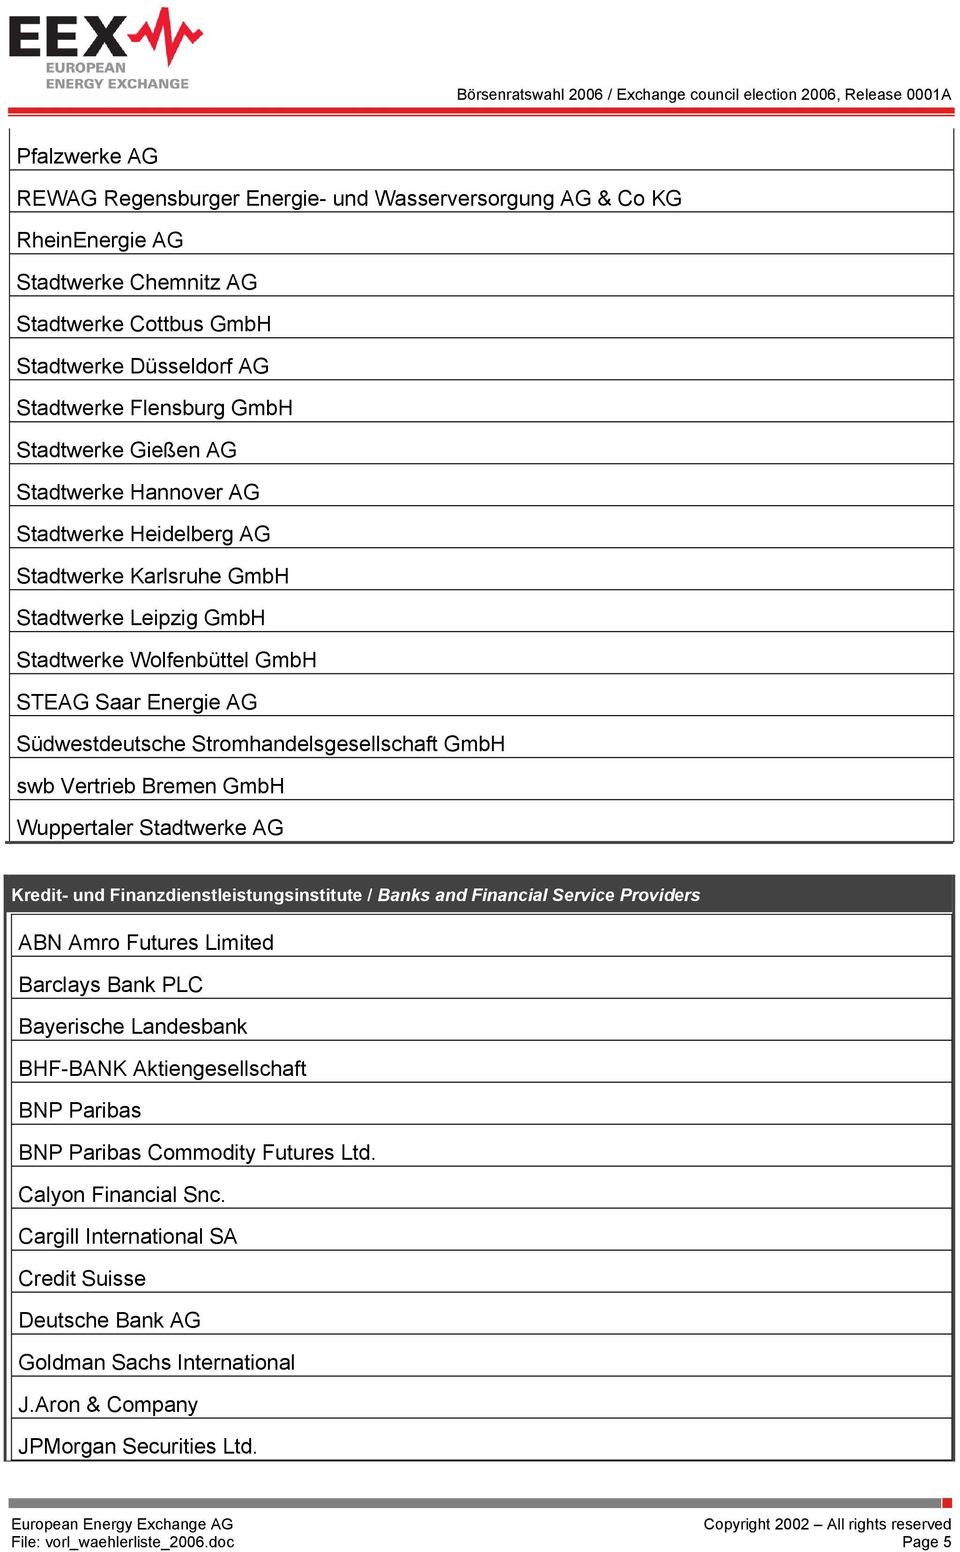 GmbH swb Vertrieb Bremen GmbH Wuppertaler Stadtwerke AG Kredit- und Finanzdienstleistungsinstitute / Banks and Financial Service Providers ABN Amro Futures Limited Barclays Bank PLC Bayerische